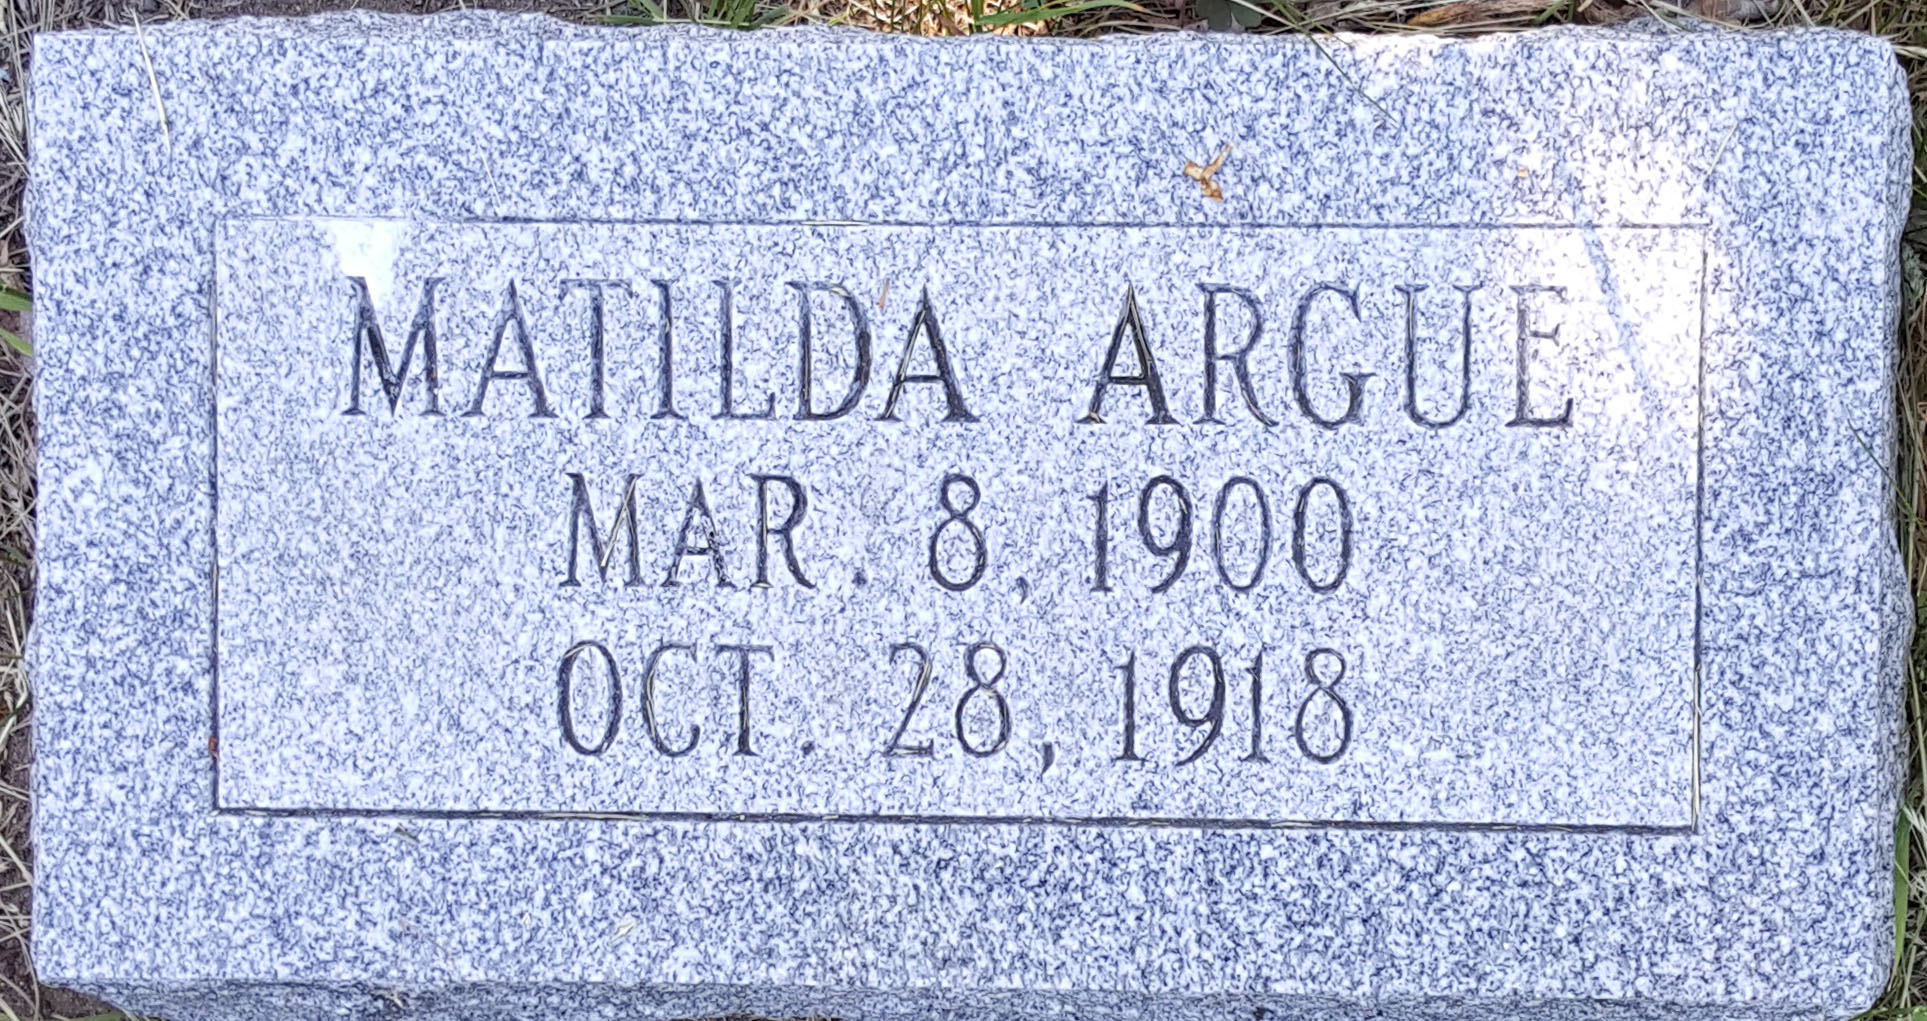 Matilda Argue's Marker